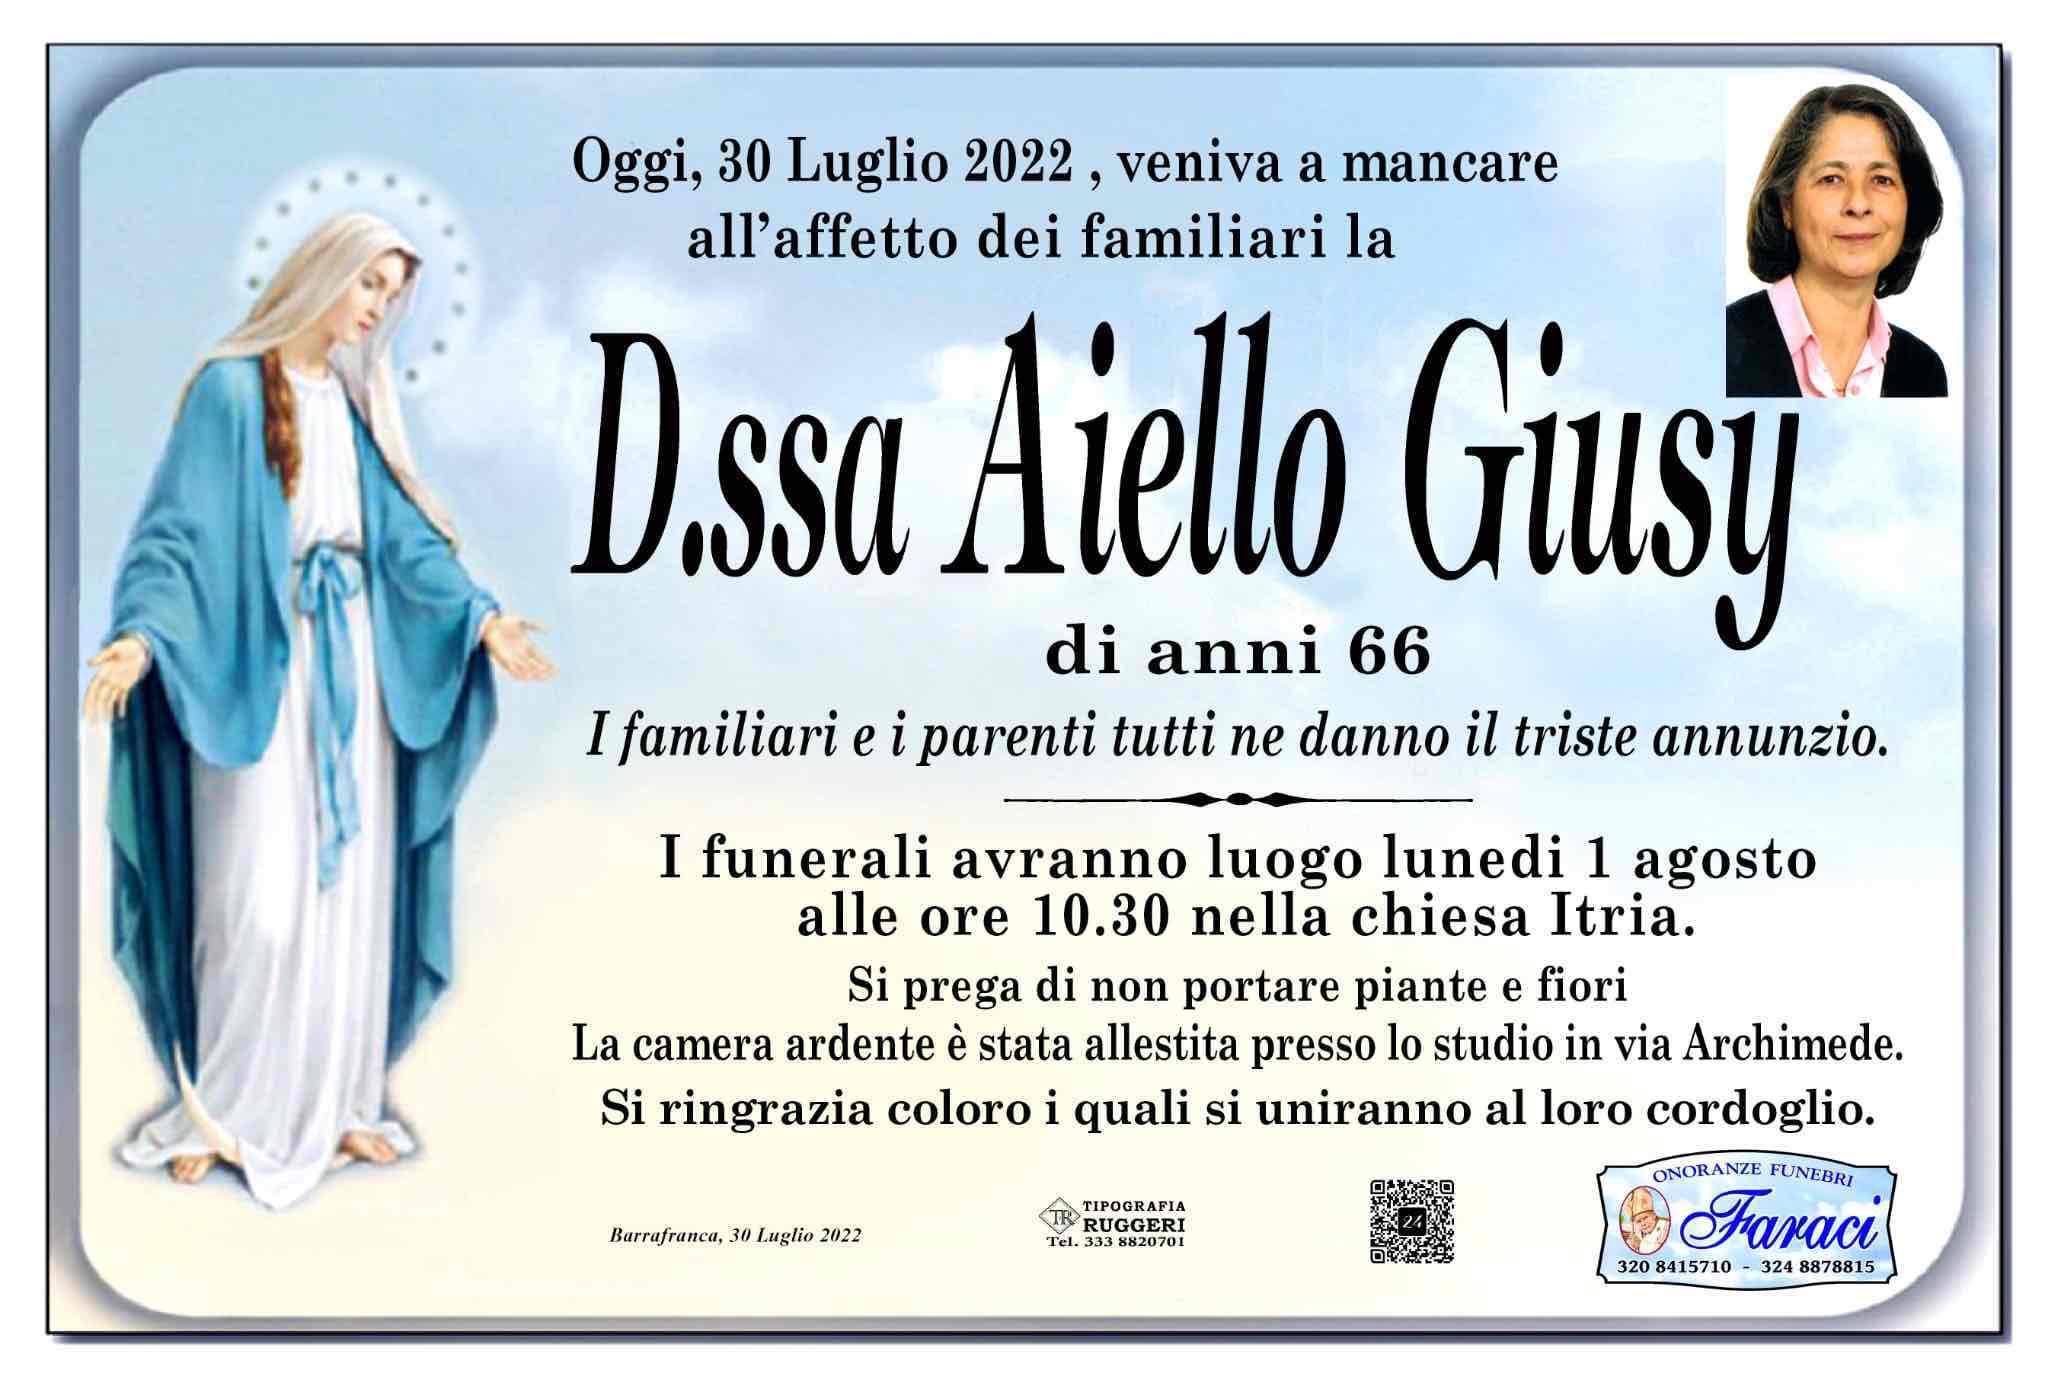 Giuseppa Aiello